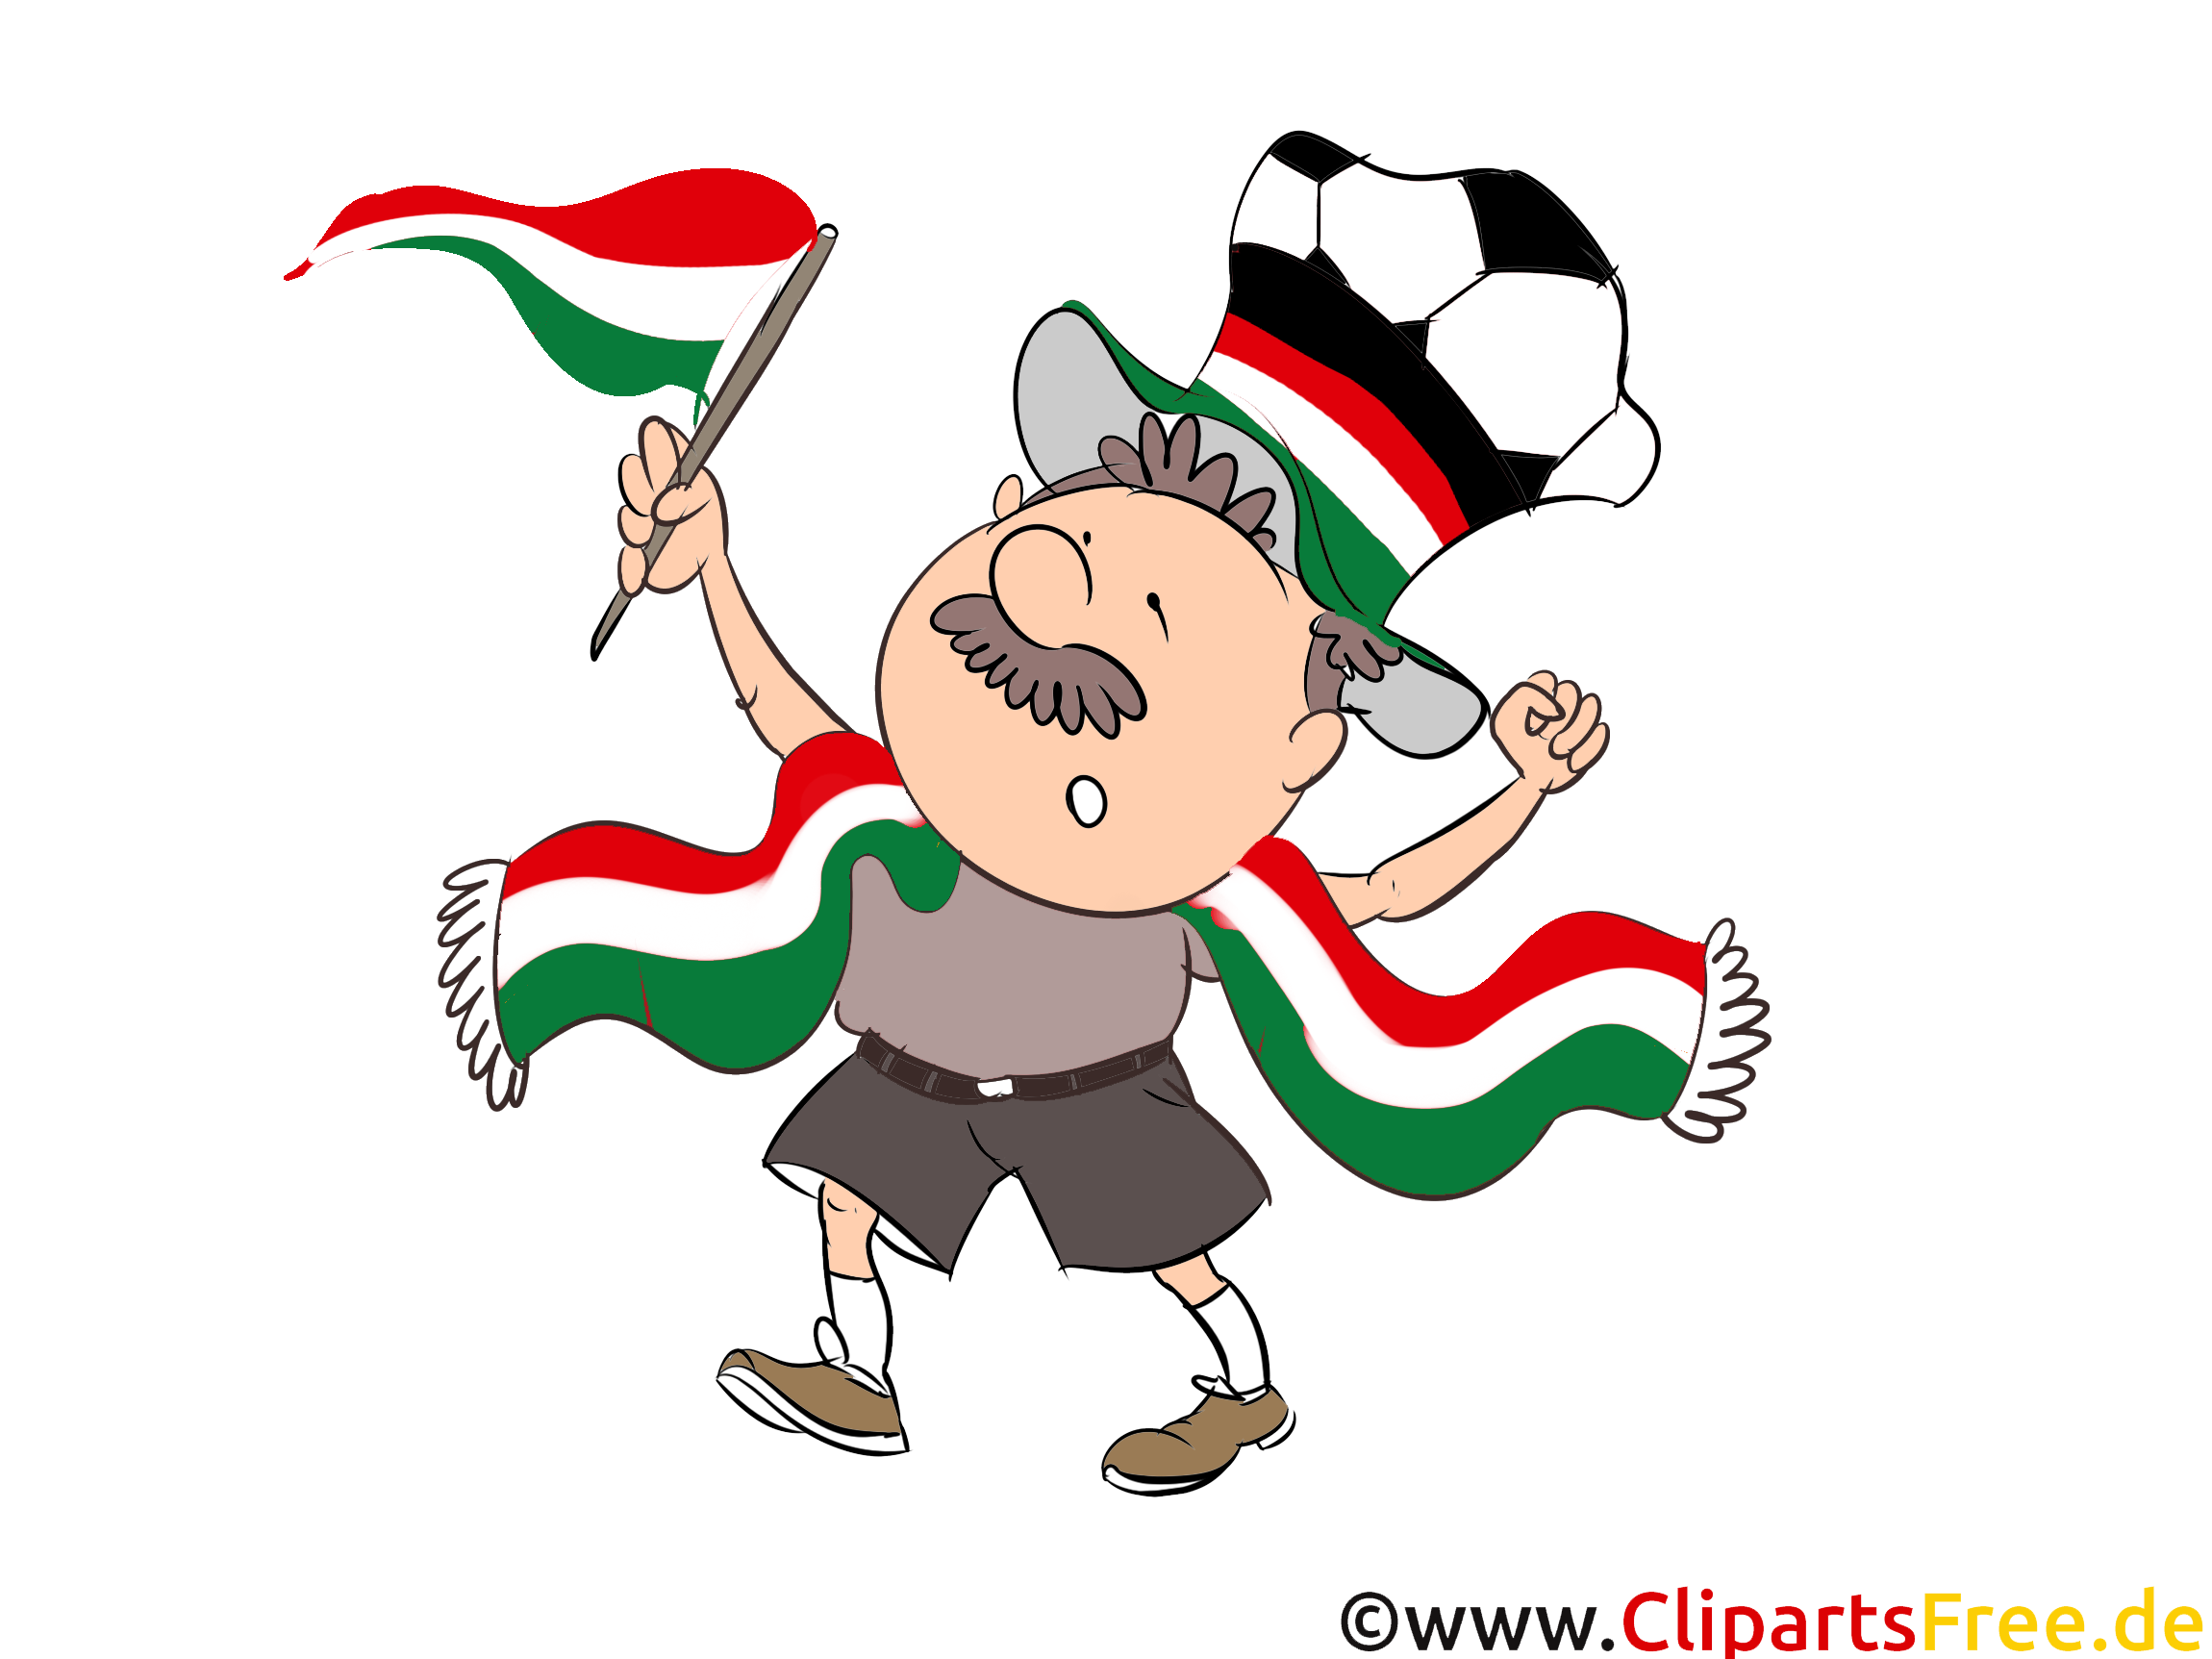 Football gratuitement télécharger Hongrie Images